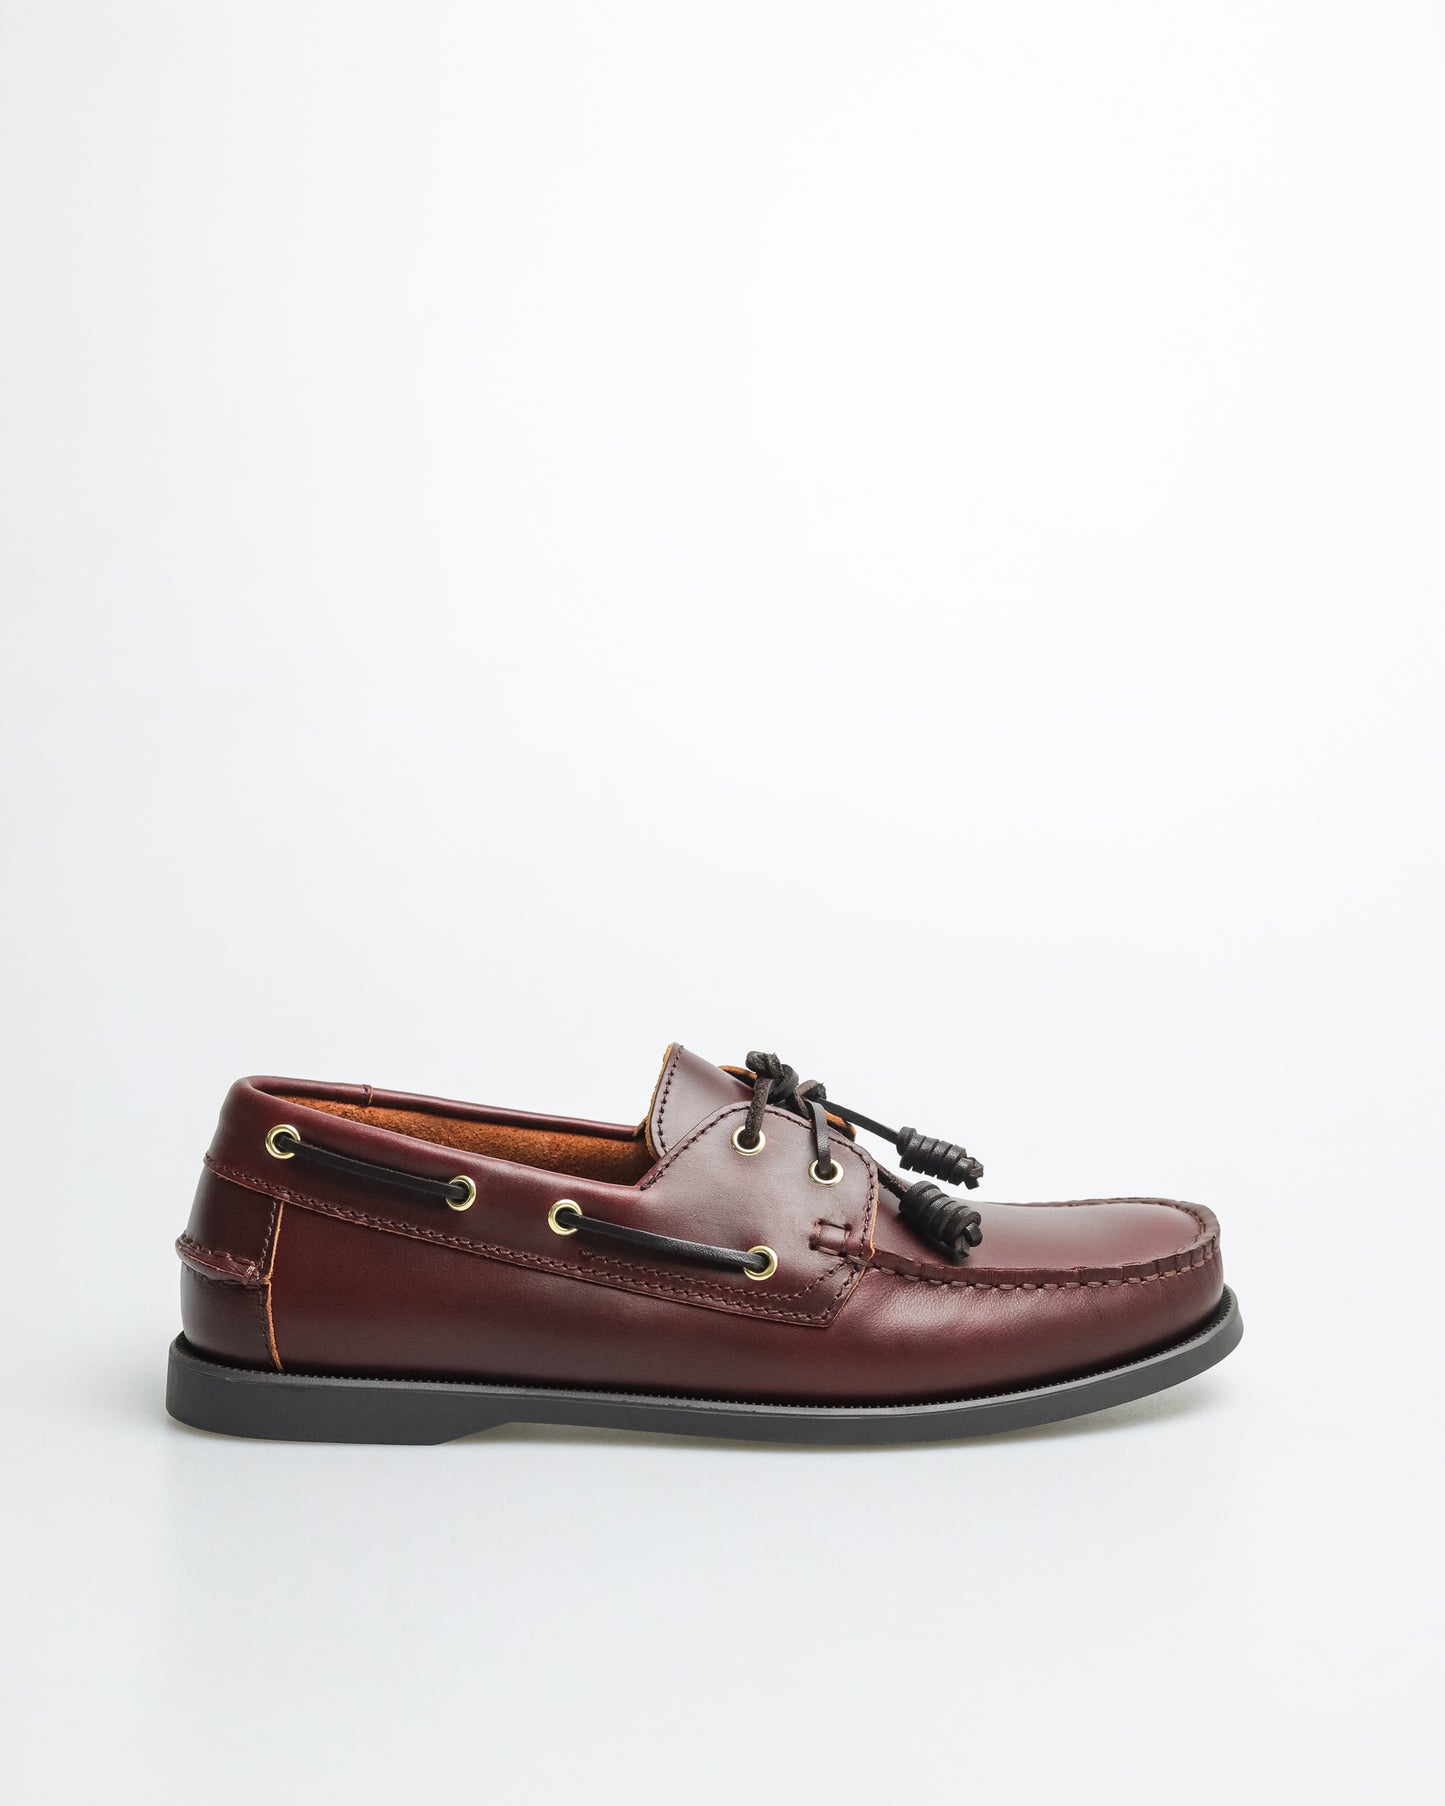 Tomaz C328 Men's Leather Boat Shoes (Wine)